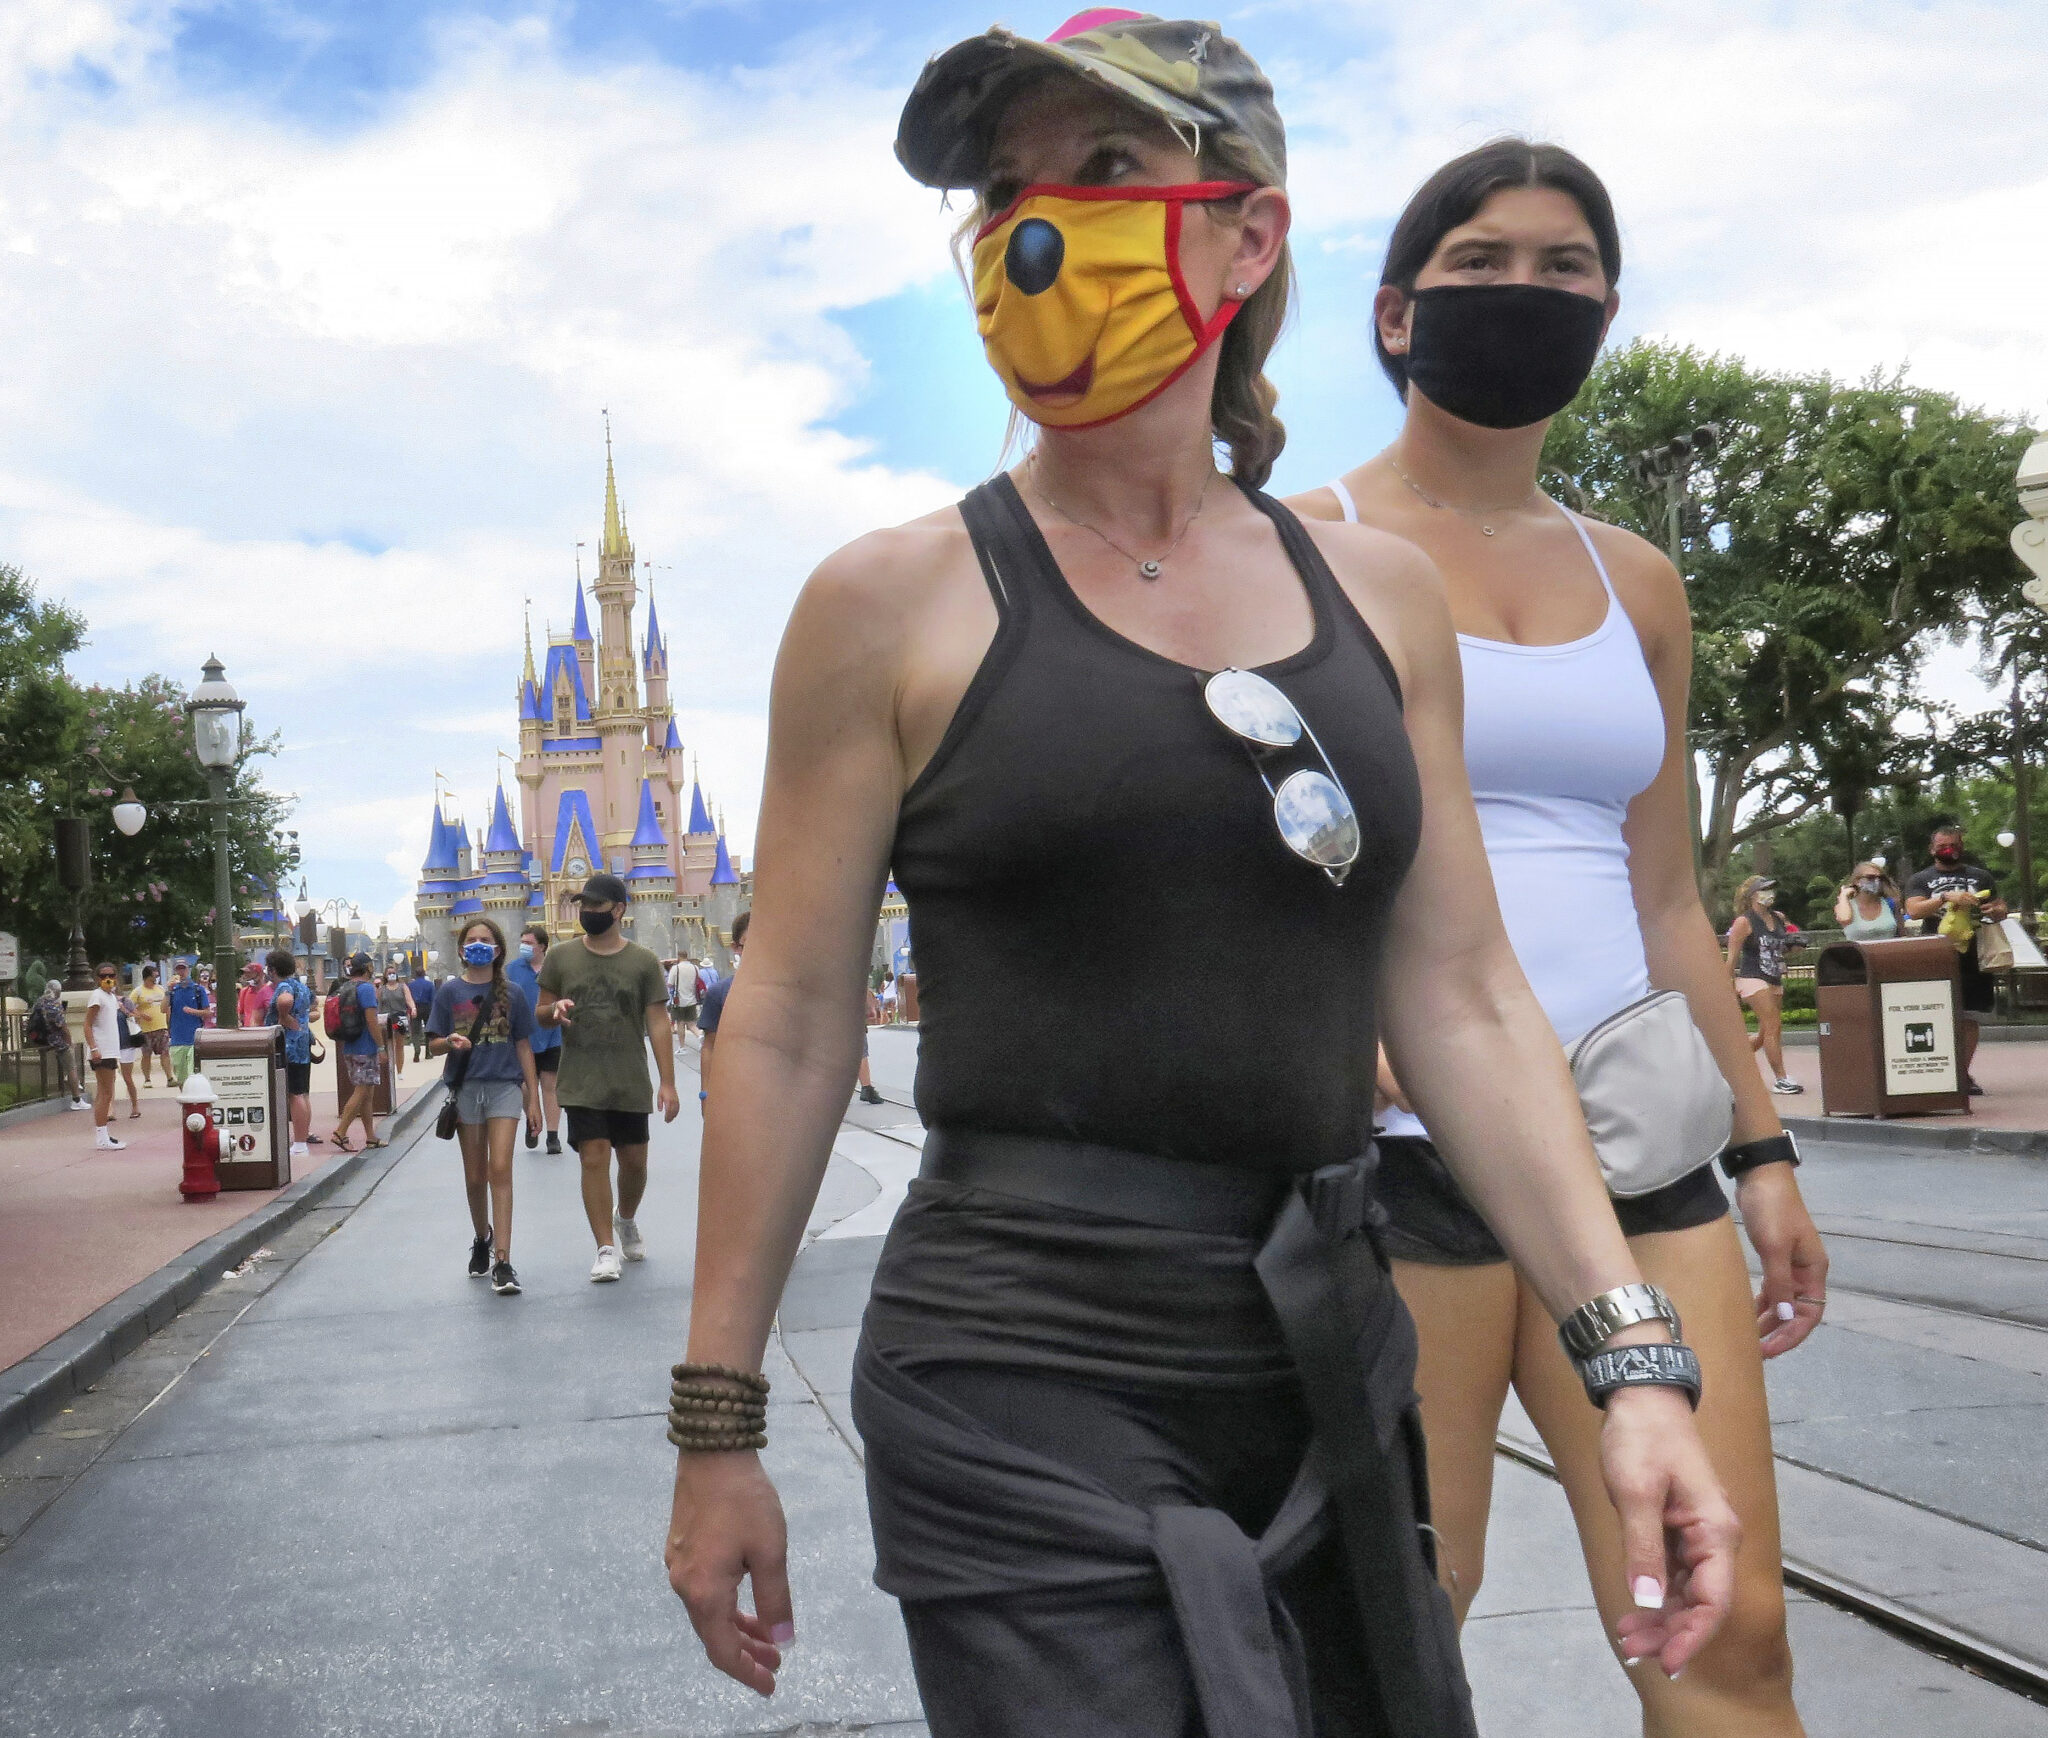 Первые посетители вновь открывшегося парка Disny World. Фото Joe Burbank/Orlando Sentinel/AP/Scanpix/Leta